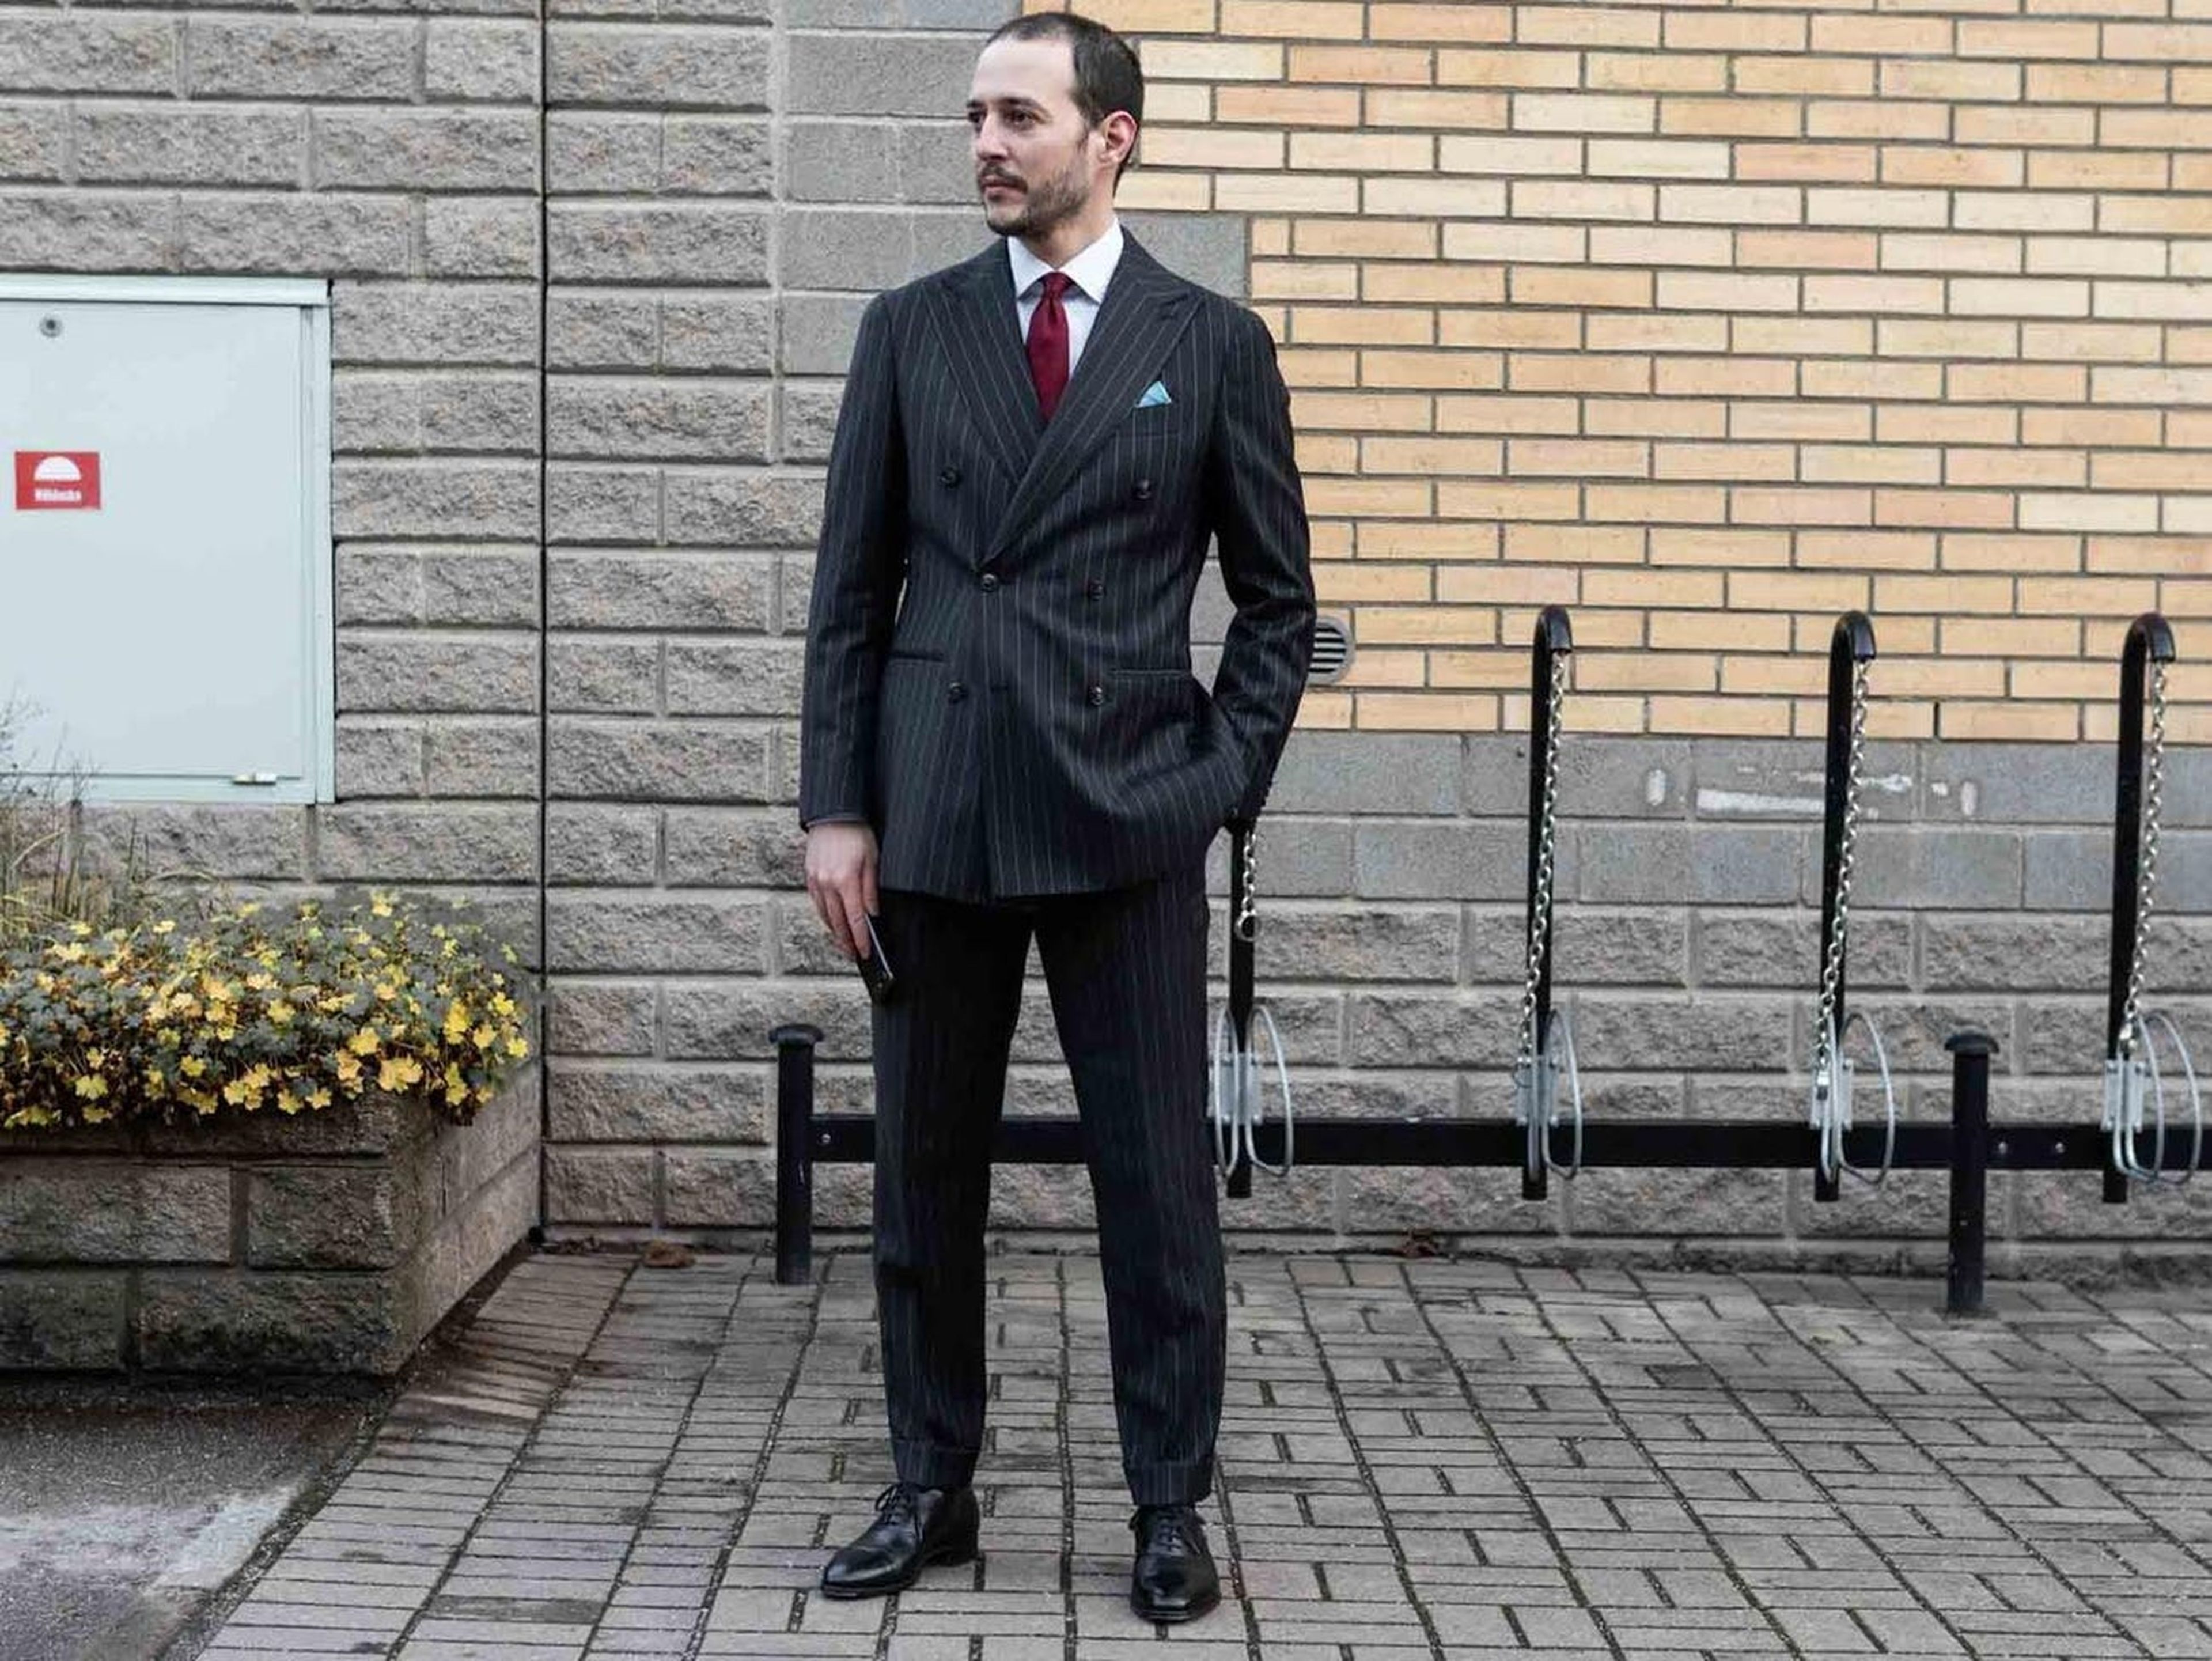 Ingeniero a su trabajo y gana zapatos de vestir | Business Insider España